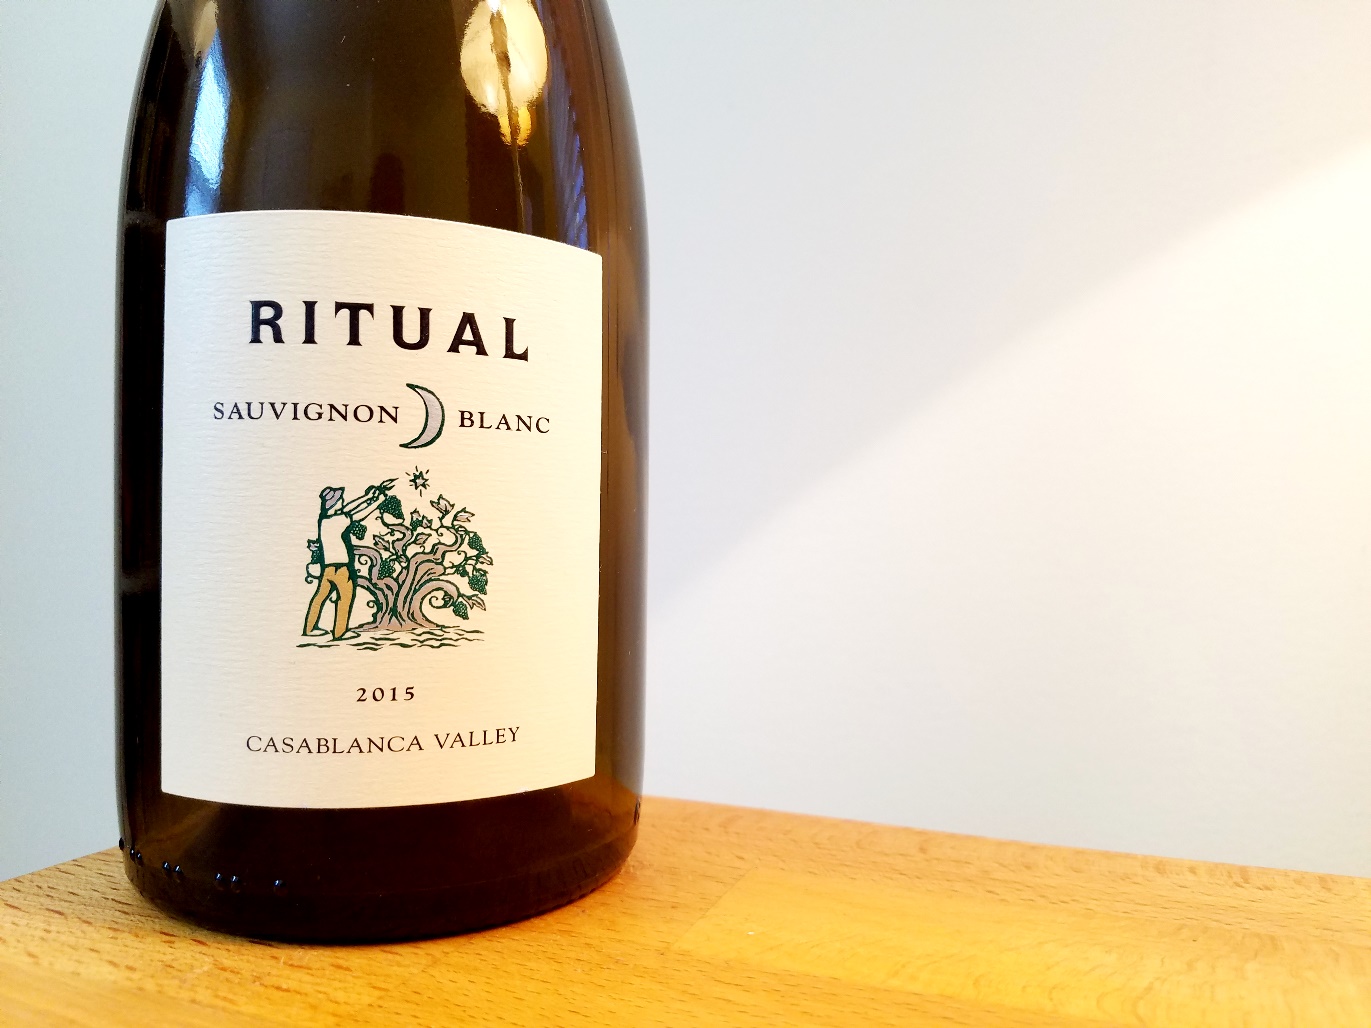 Ritual, Sauvignon Blanc 2015, Casablanca Valley, Chile, Wine Casual